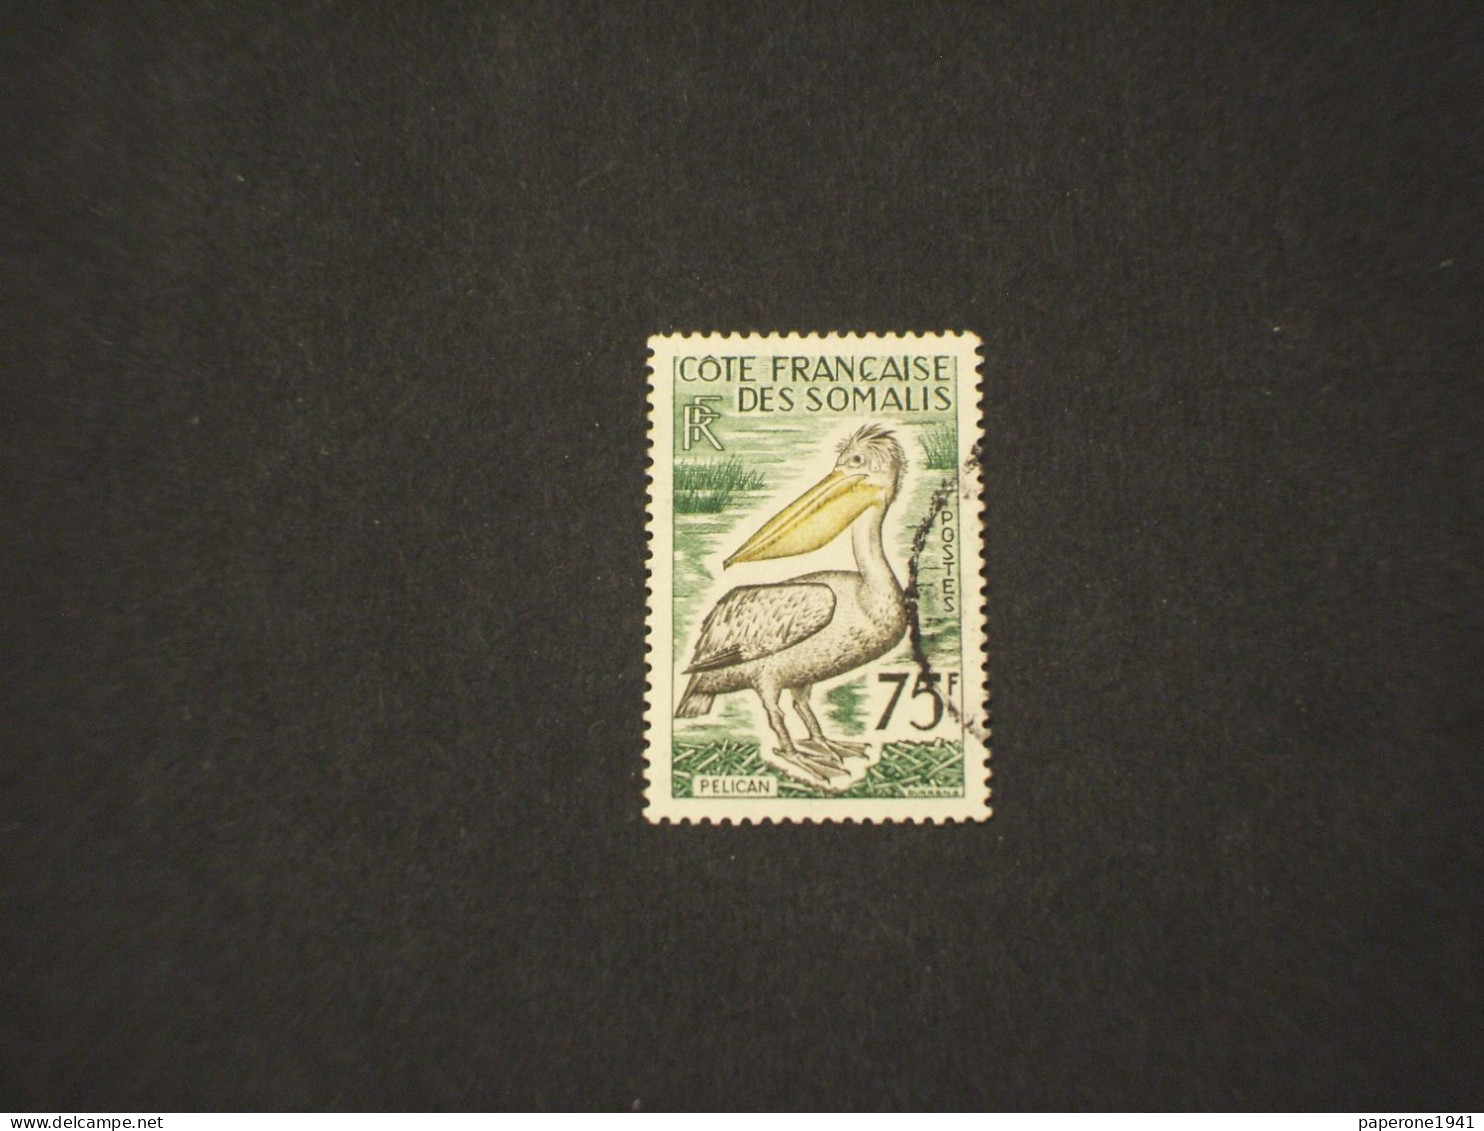 COSTA FRANCESE DEI SOMALI-COTE FRANCAISE DES SOMALIS - 1959/60 UCCELLO/PELLICANO 75 F. - TIMBRATO/USED - Usati